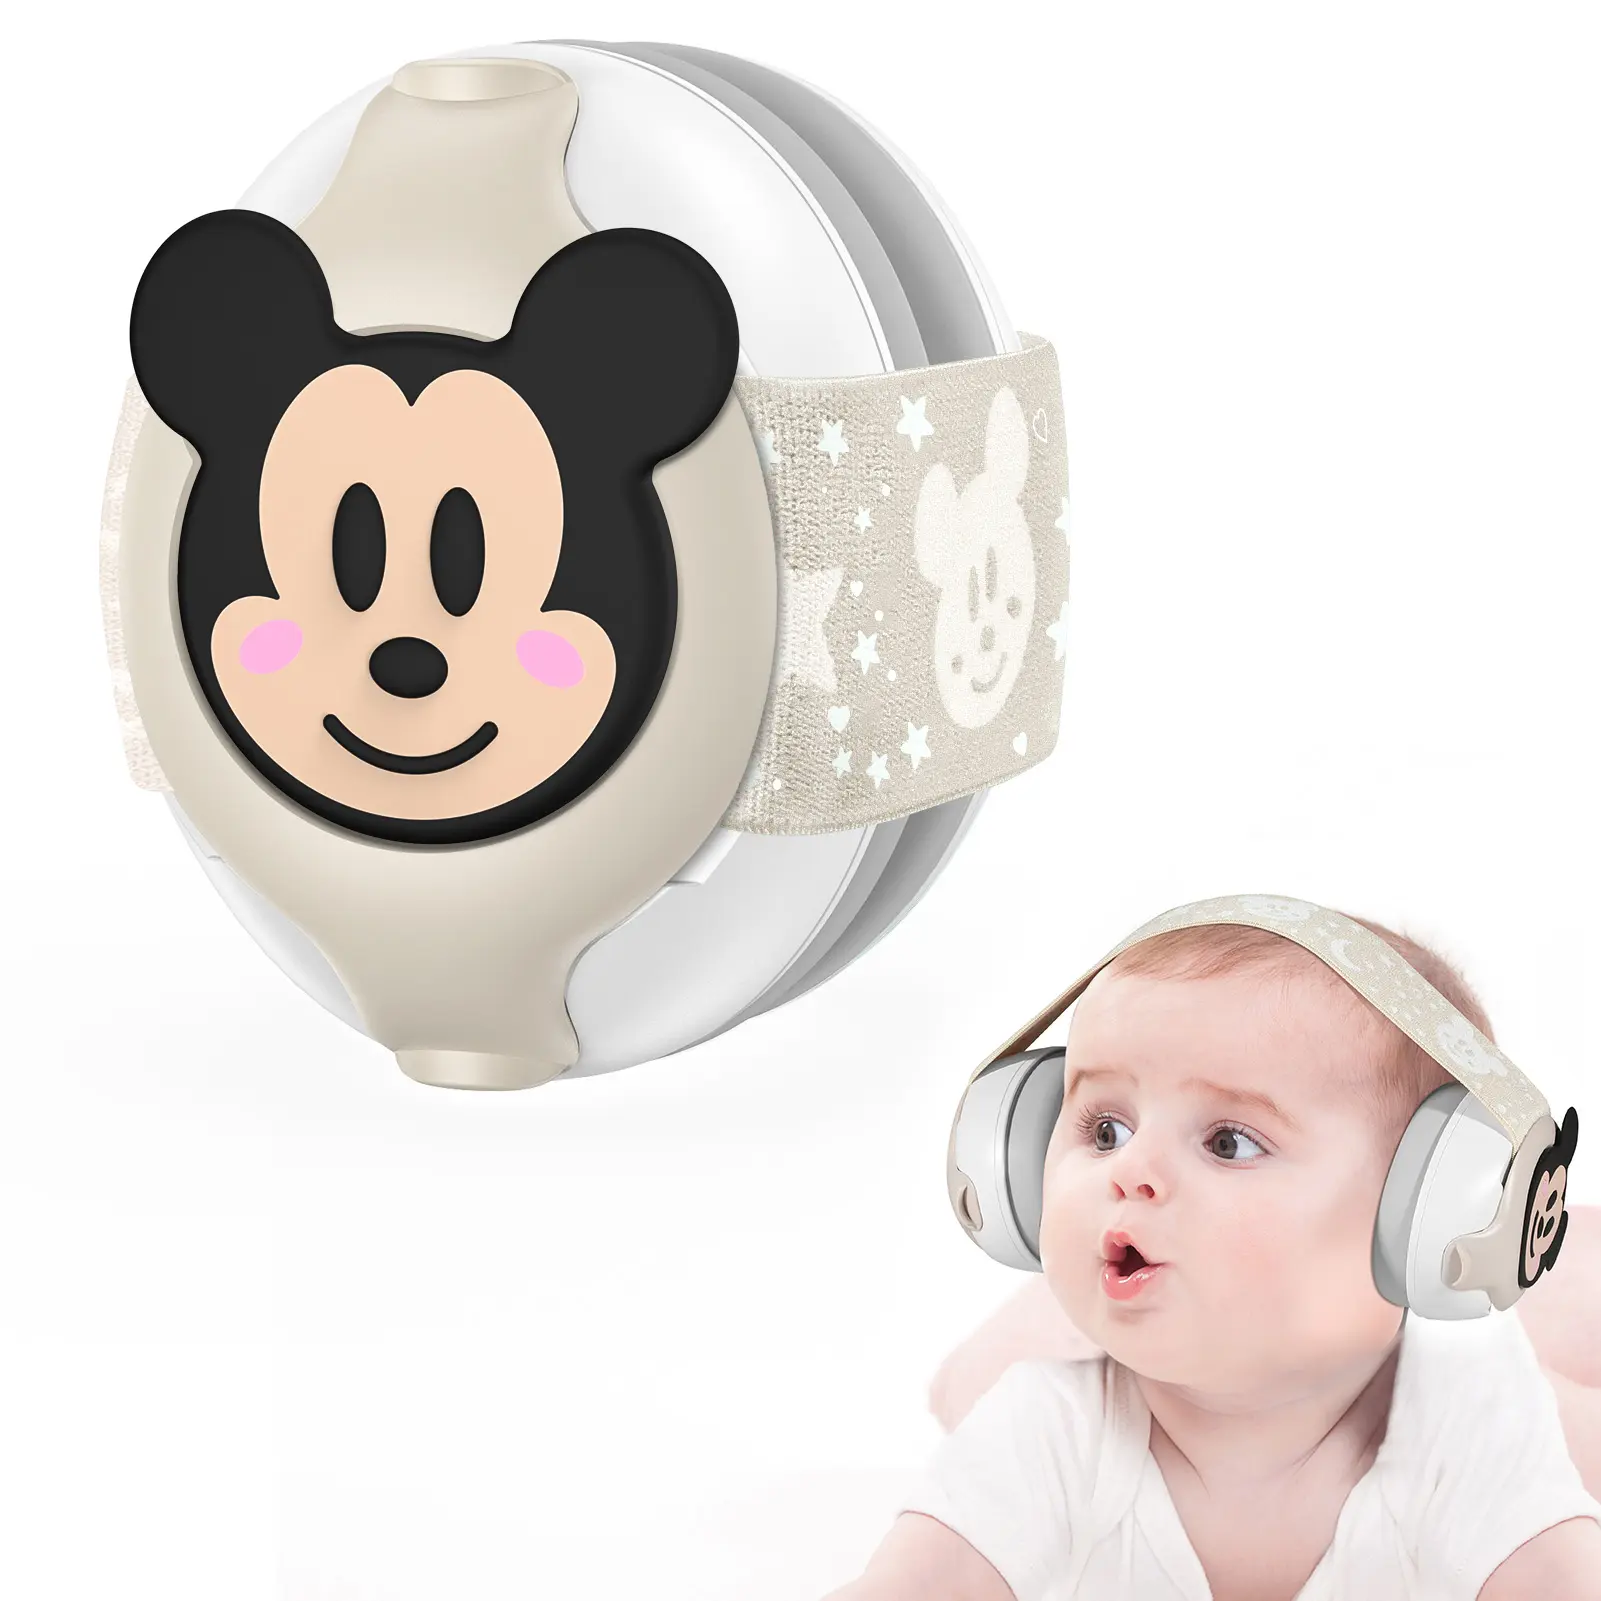 Protège-oreilles insonorisées personnalisable pour bébé-cache-oreilles mignon anti-bruit avec dessin animé logo personnalisé pour cache-oreilles